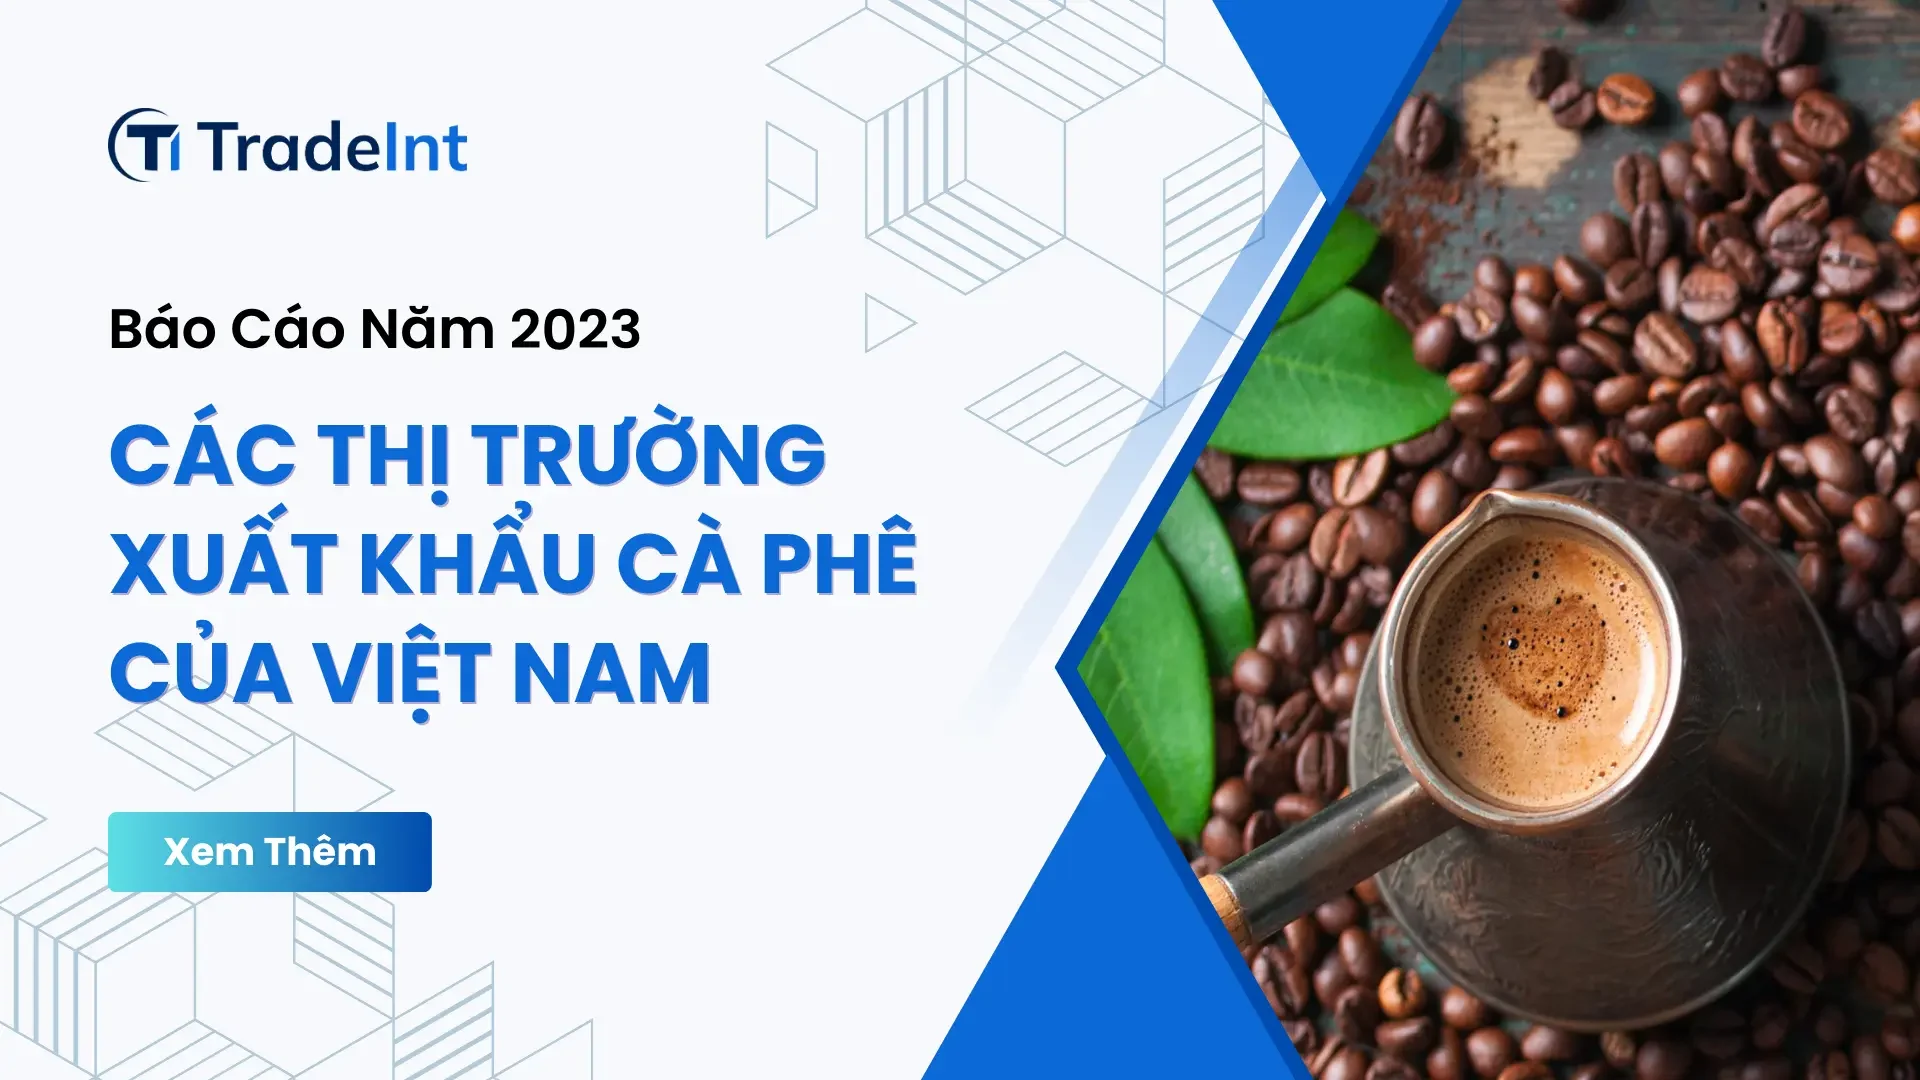 Các thị trường xuất khẩu cà phê chủ lực của Việt Nam trong năm 2023